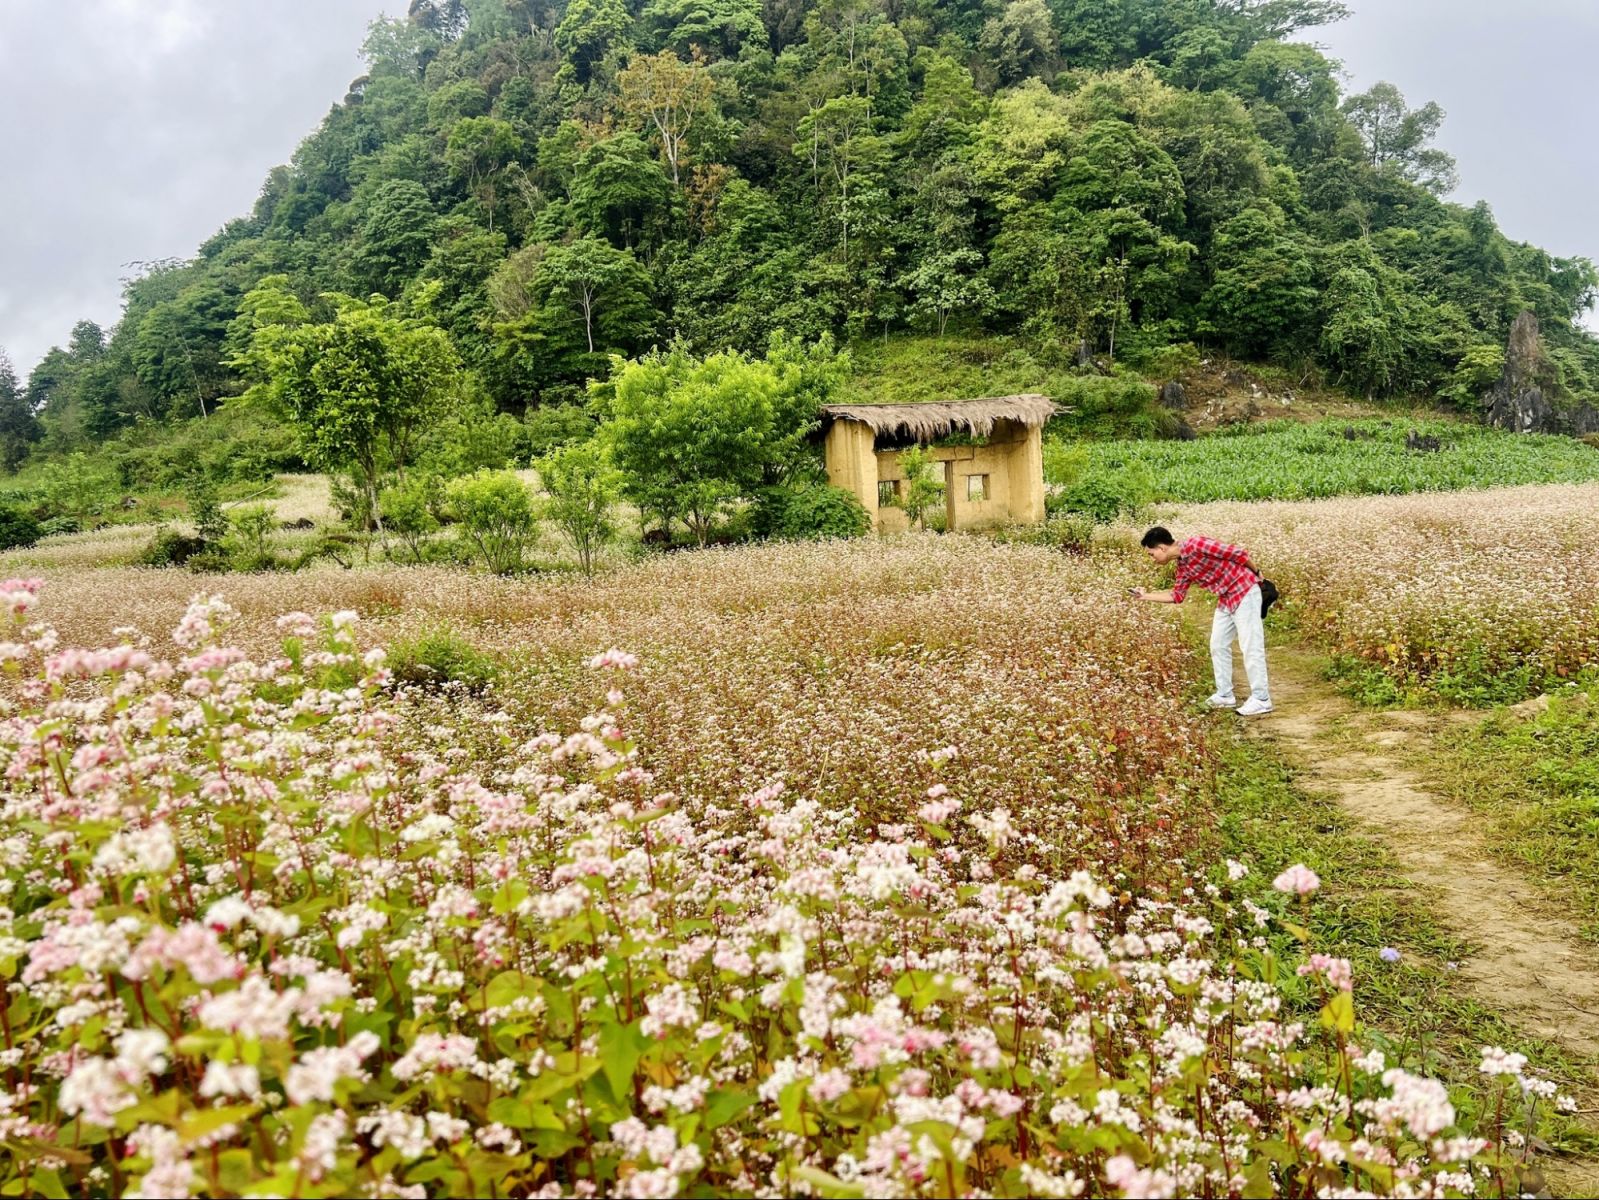 Hoa tam giác mạch nở rộn báo hiệu Hà Giang đang vào mùa du lịch, khoảng thời gian đẹp nhất trong năm